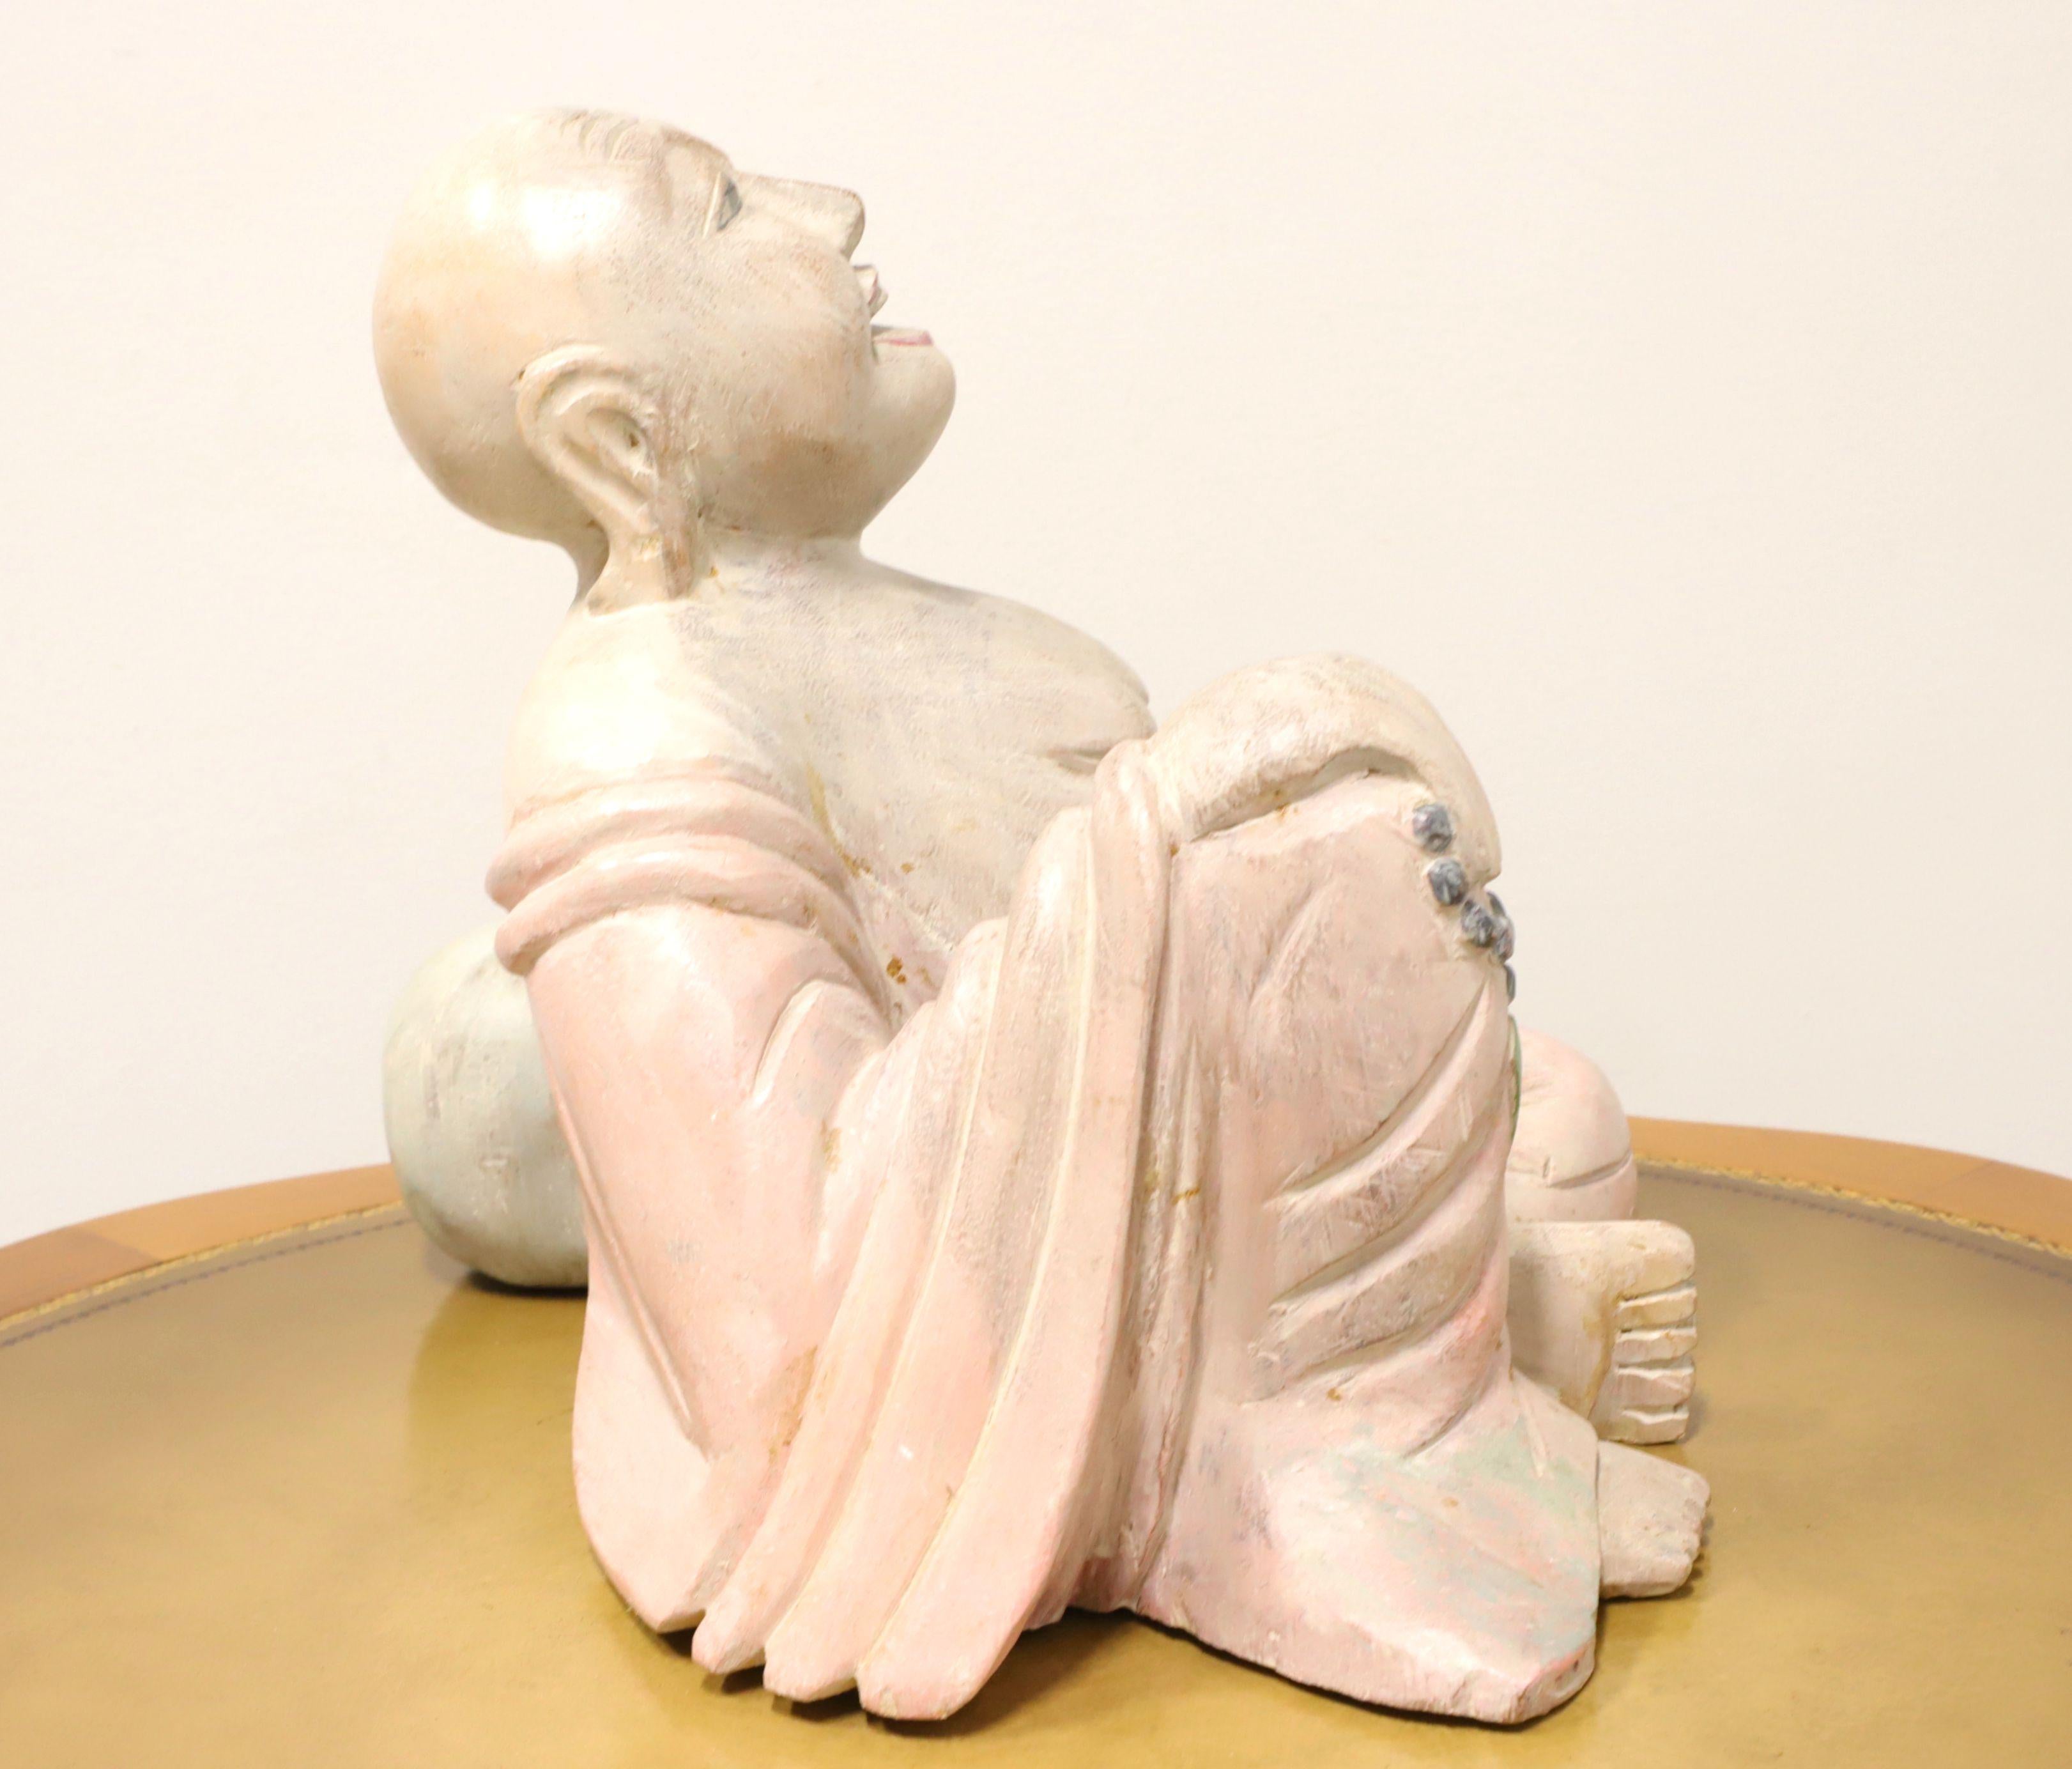 Sculpture en bois représentant un bouddha assis et souriant. Non signé, artiste inconnu. Sculptée dans une pièce de bois massif et peinte dans des tons chair, rose et vert. Origine inconnue, probablement l'Asie, et produit au milieu du 20e siècle.